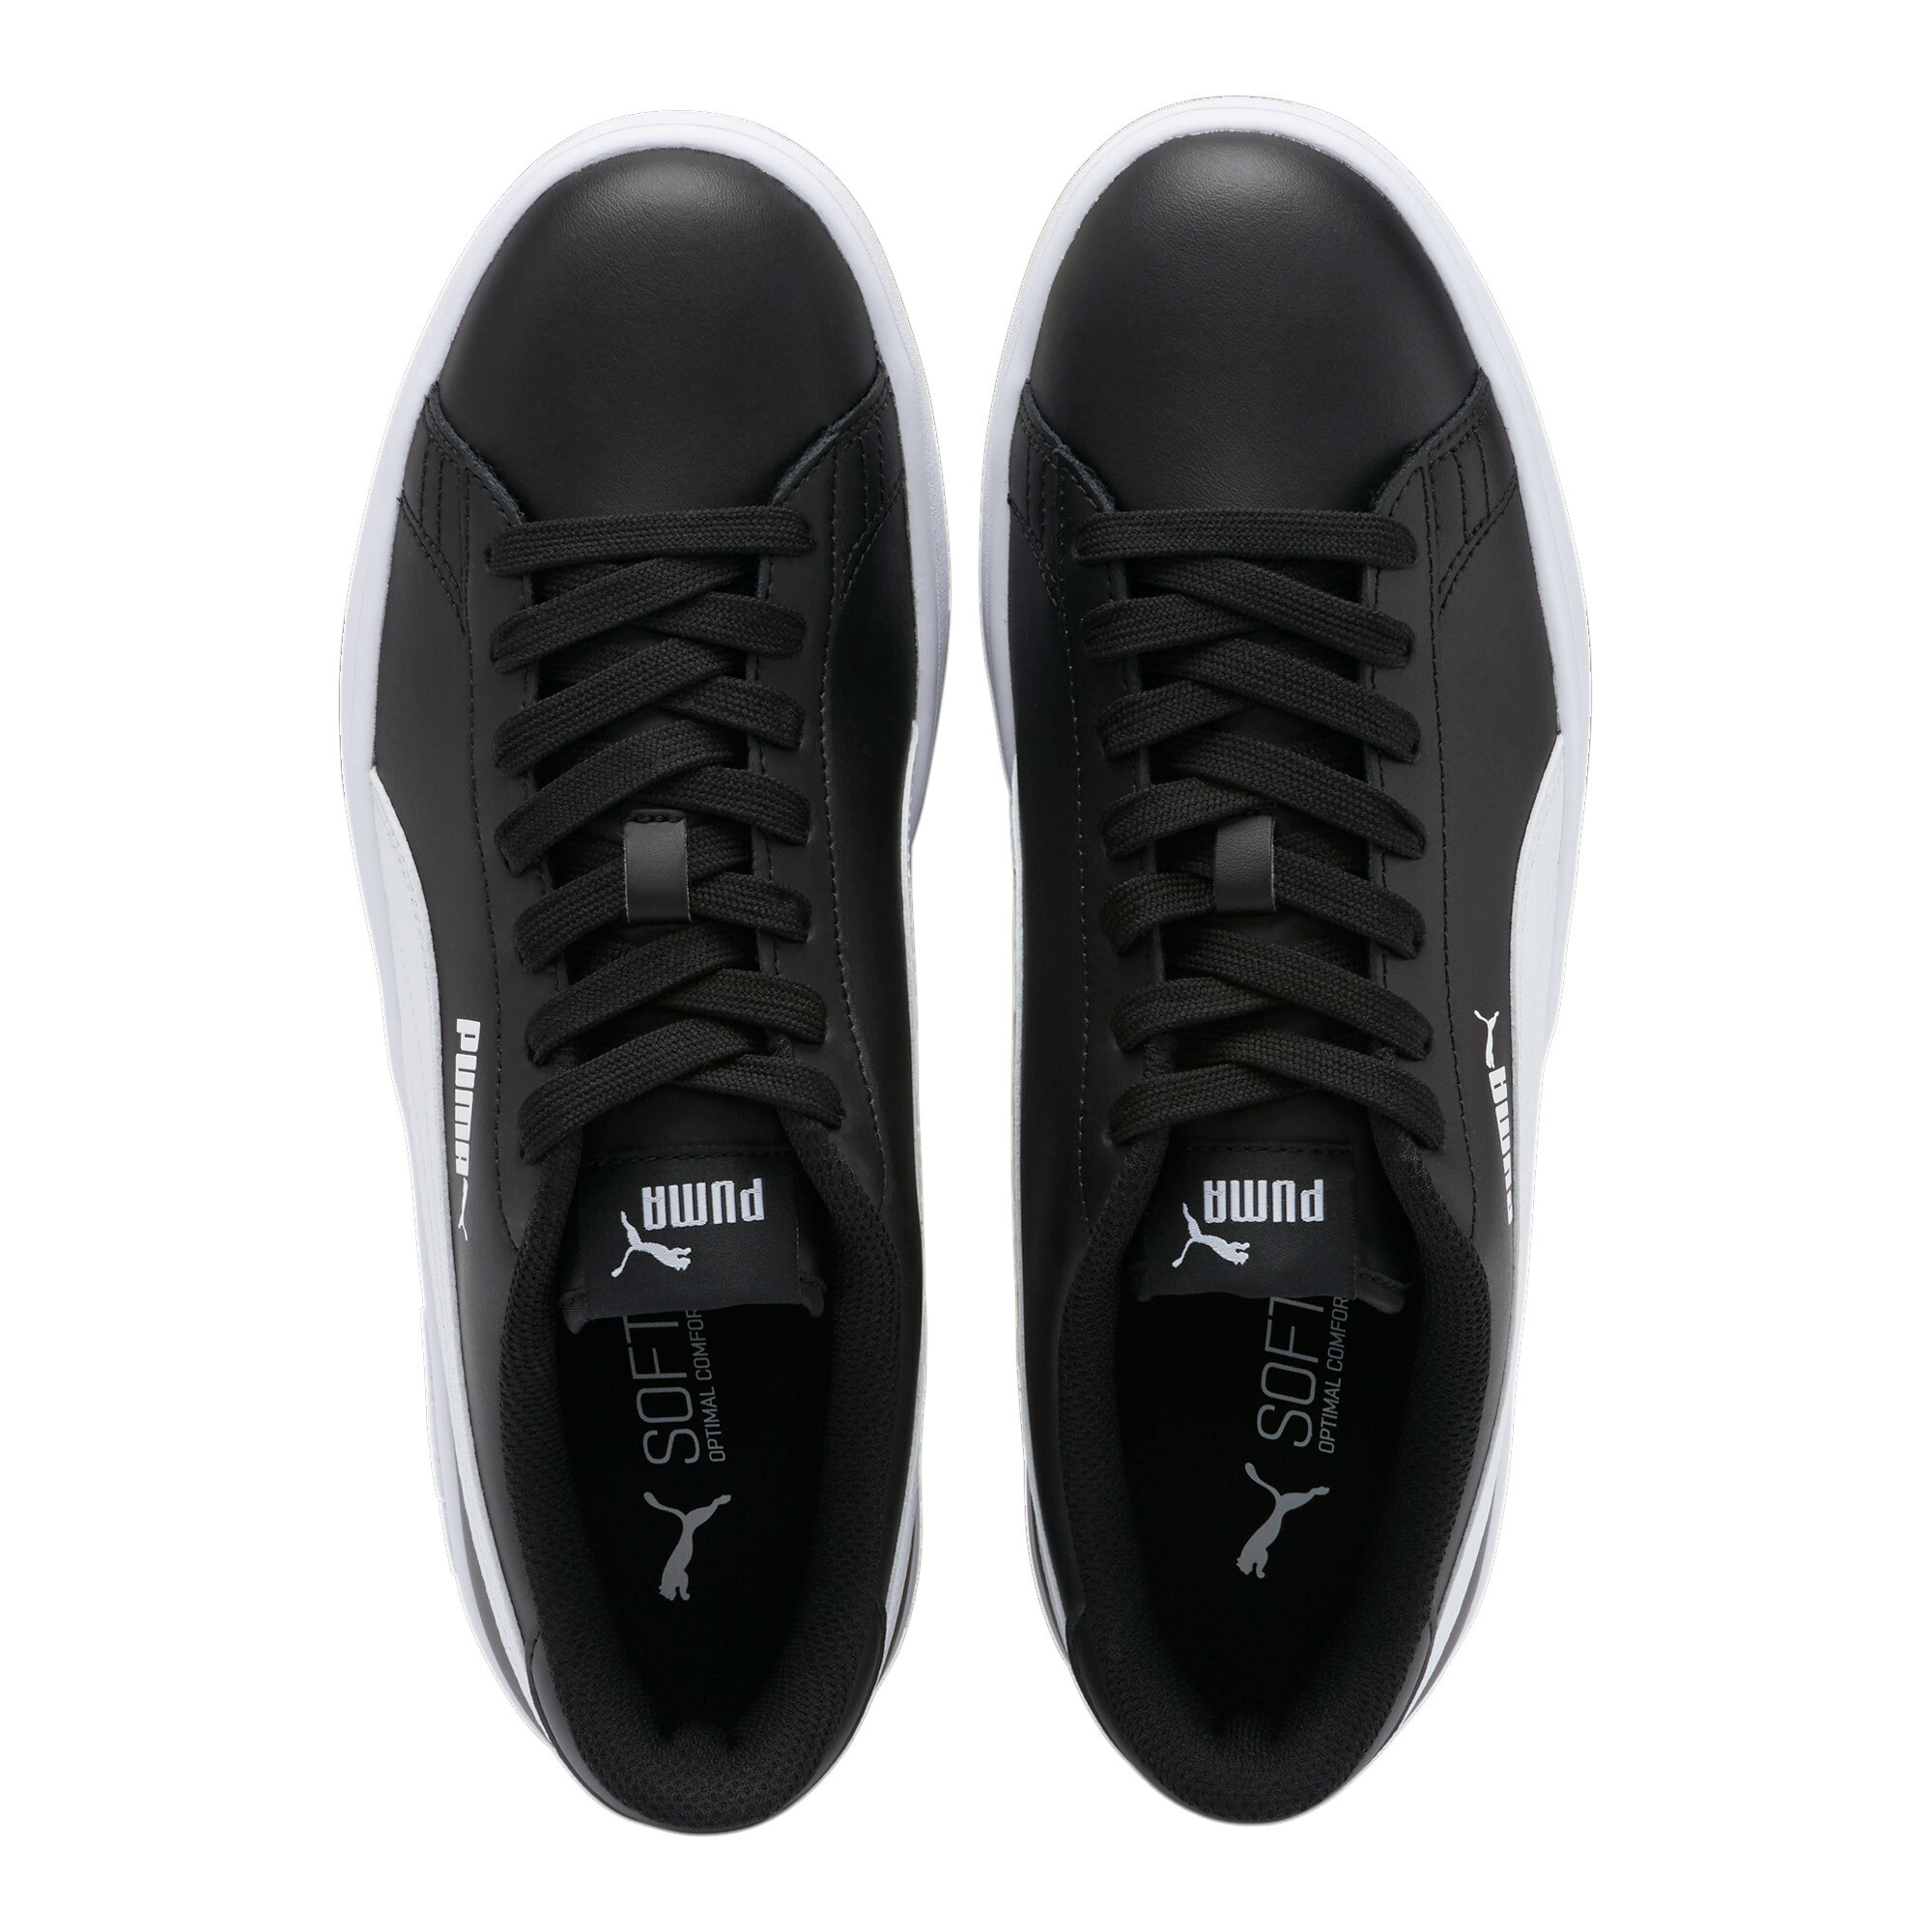 PUMA Men's Smash v2 Sneakers | eBay